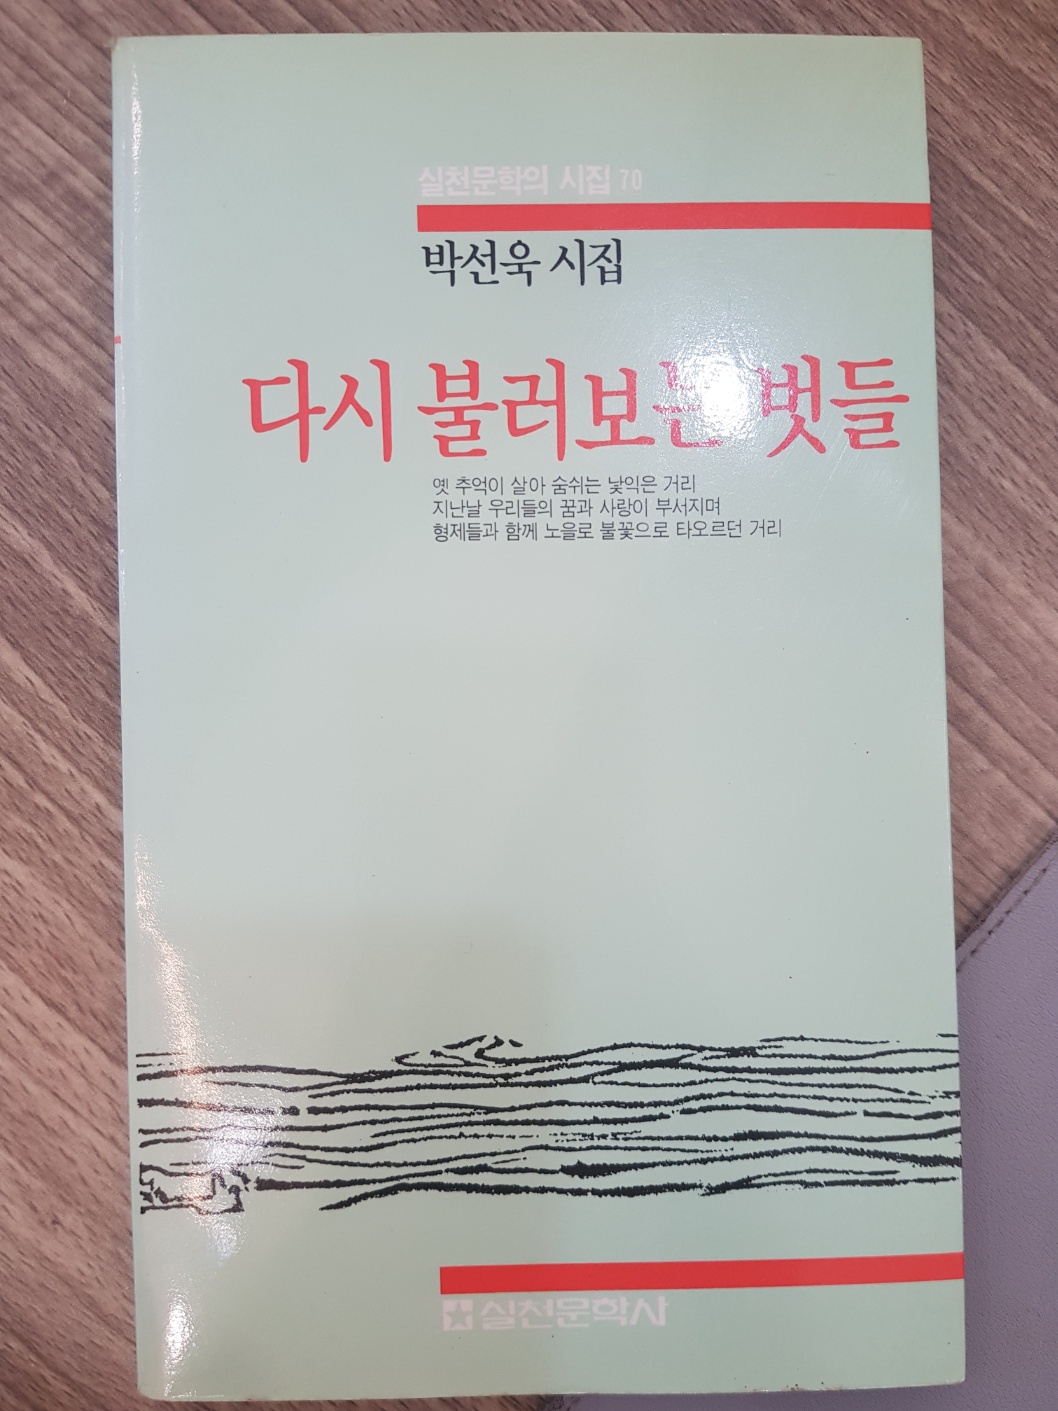 다시 불러보는 벗들 - 박선욱 시집 <1990년 초판/저자서명본>